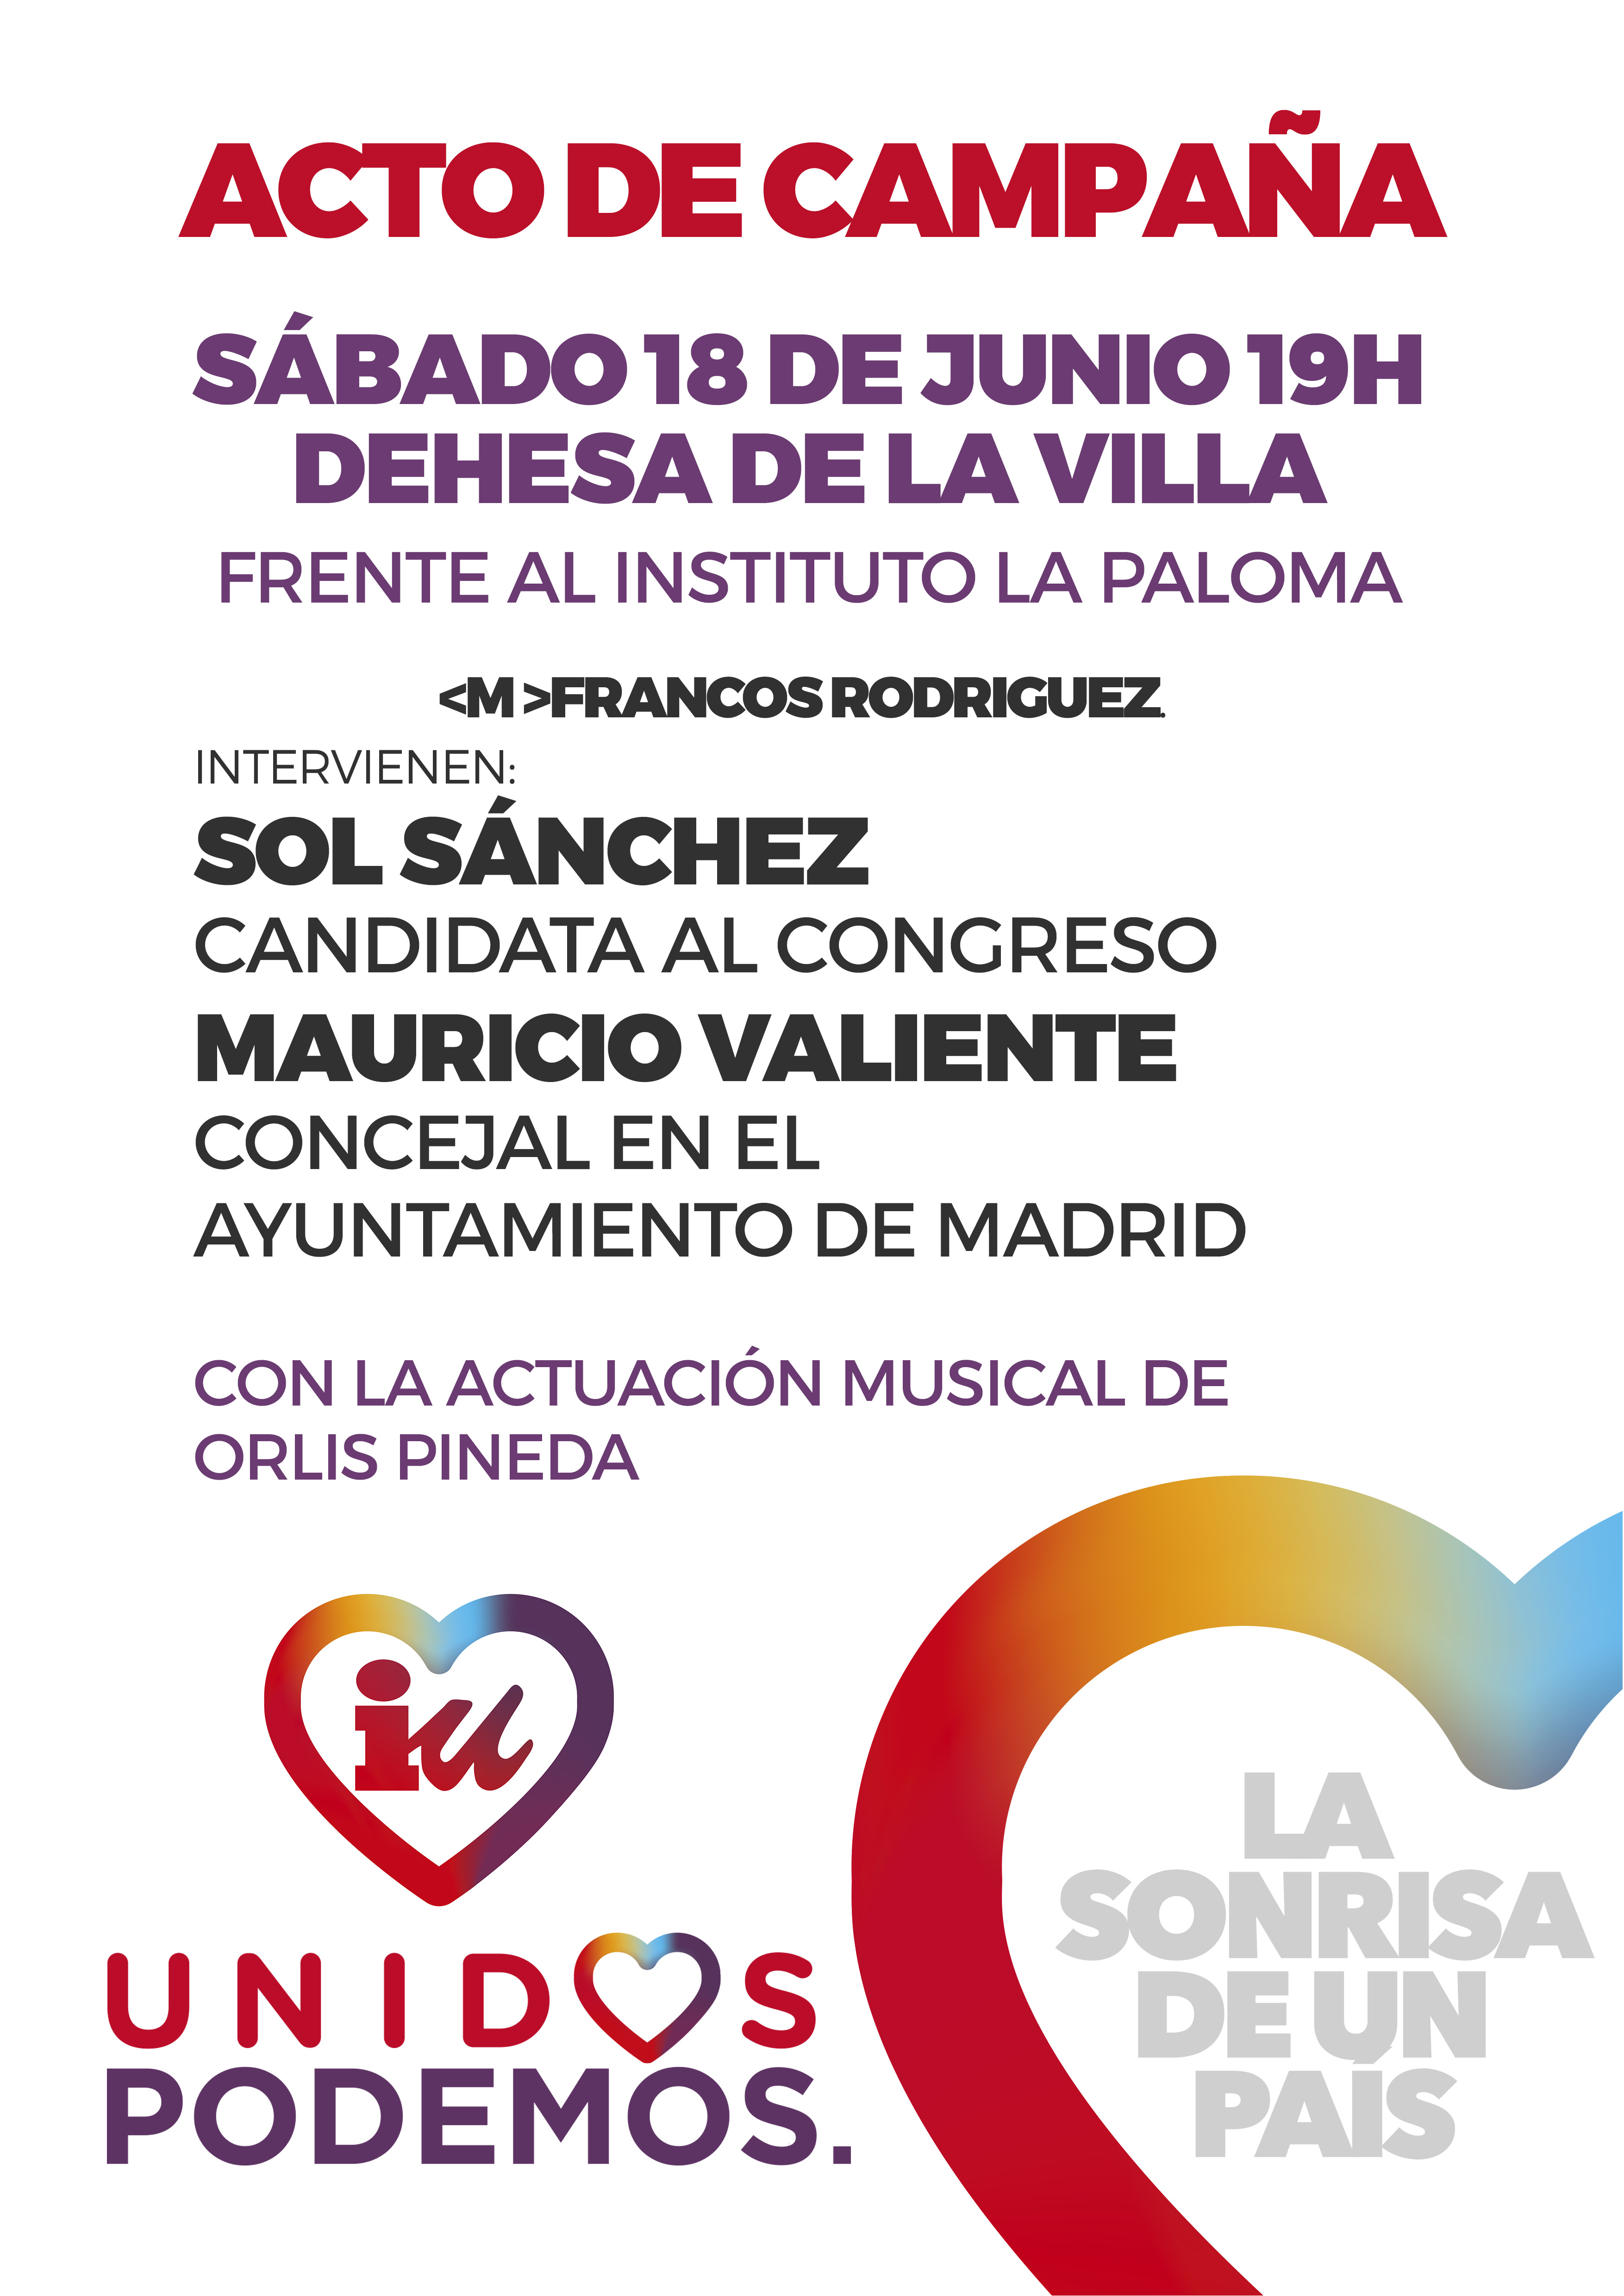 Acto de campaña de Unidos Podemos en La Dehesa de la Villa (18 de junio 19:00)